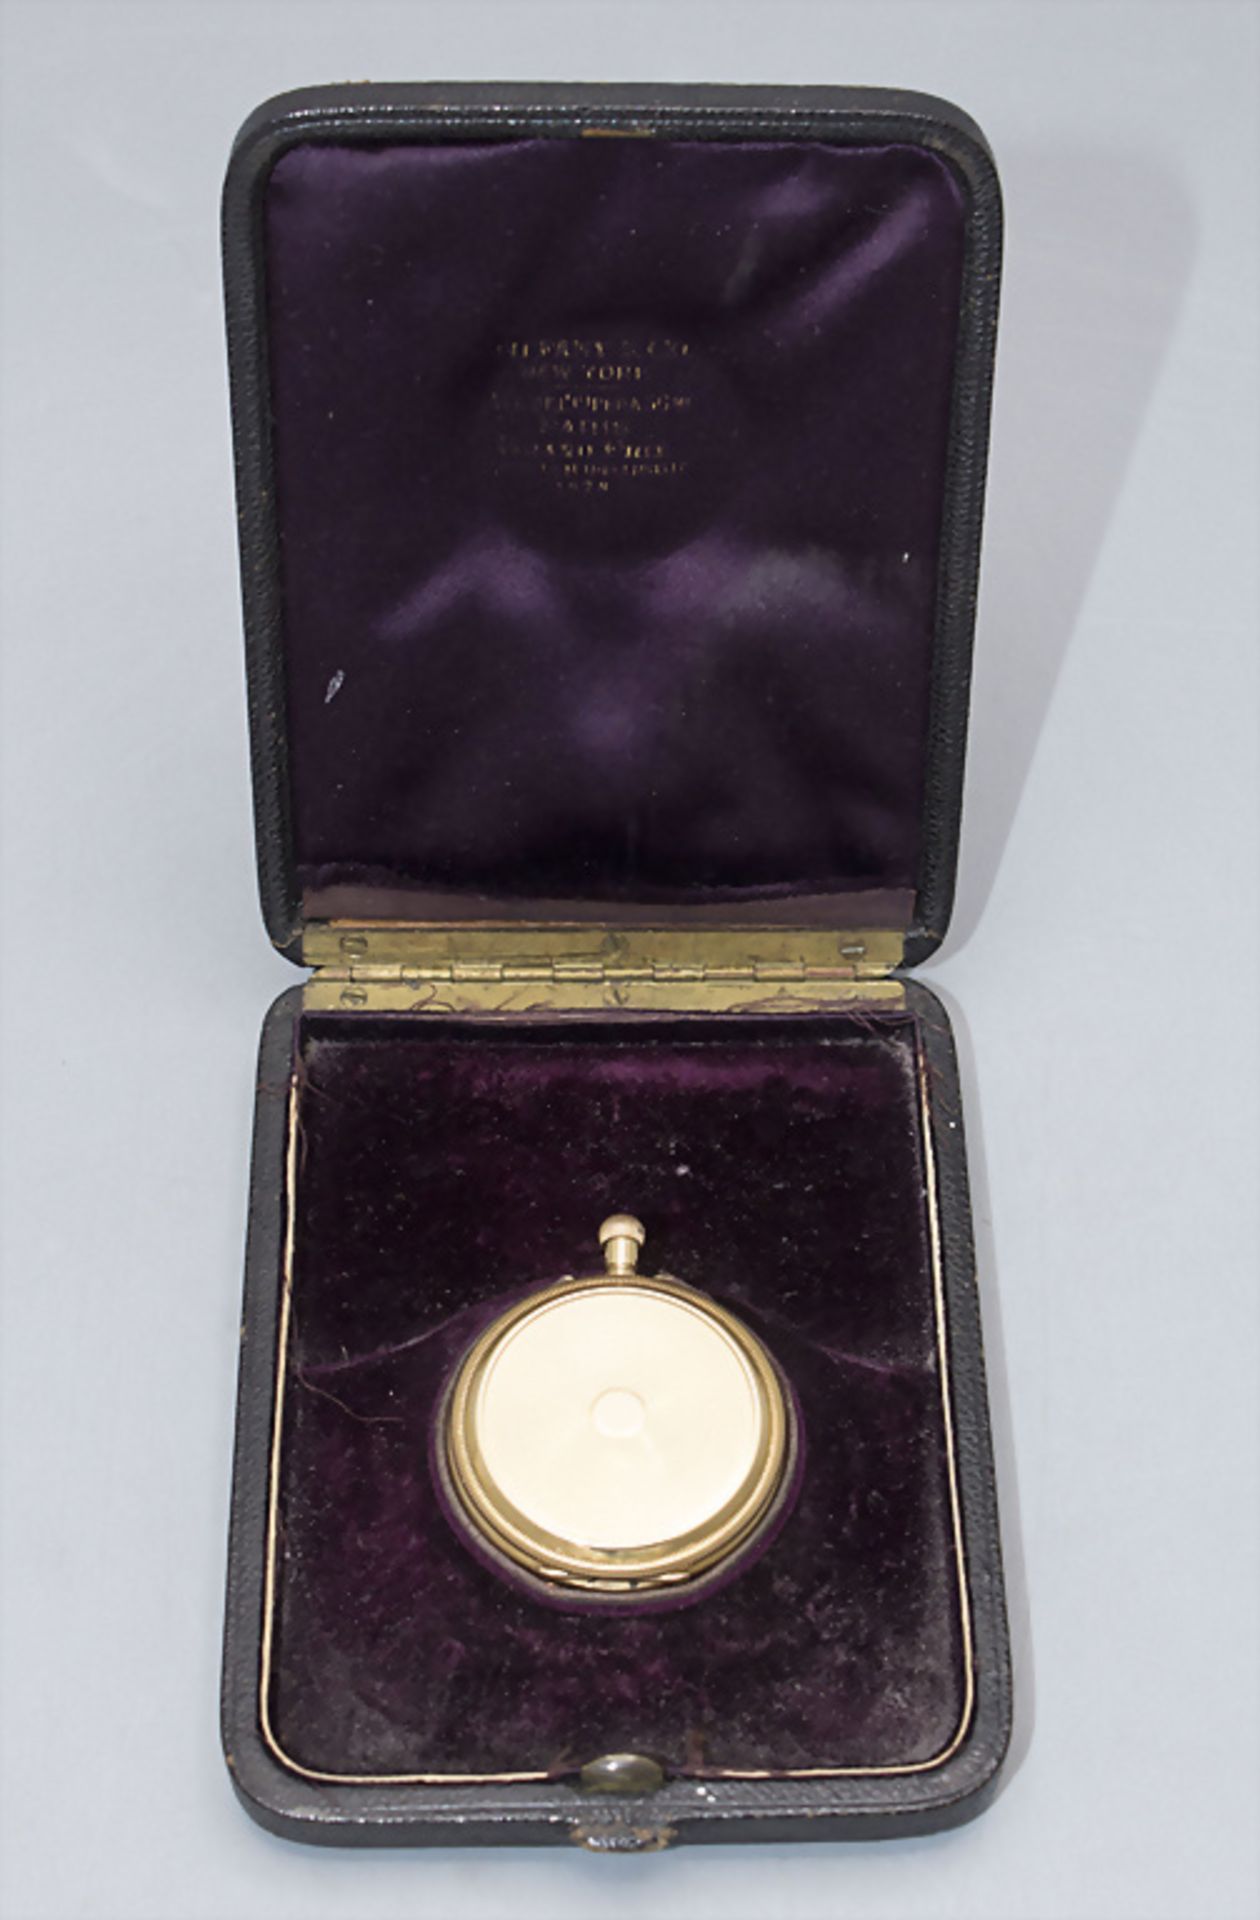 Savonette Taschenuhr / An 18 ct gold pocket watch, Tiffany & Co., New York, um 1910 - Image 2 of 7